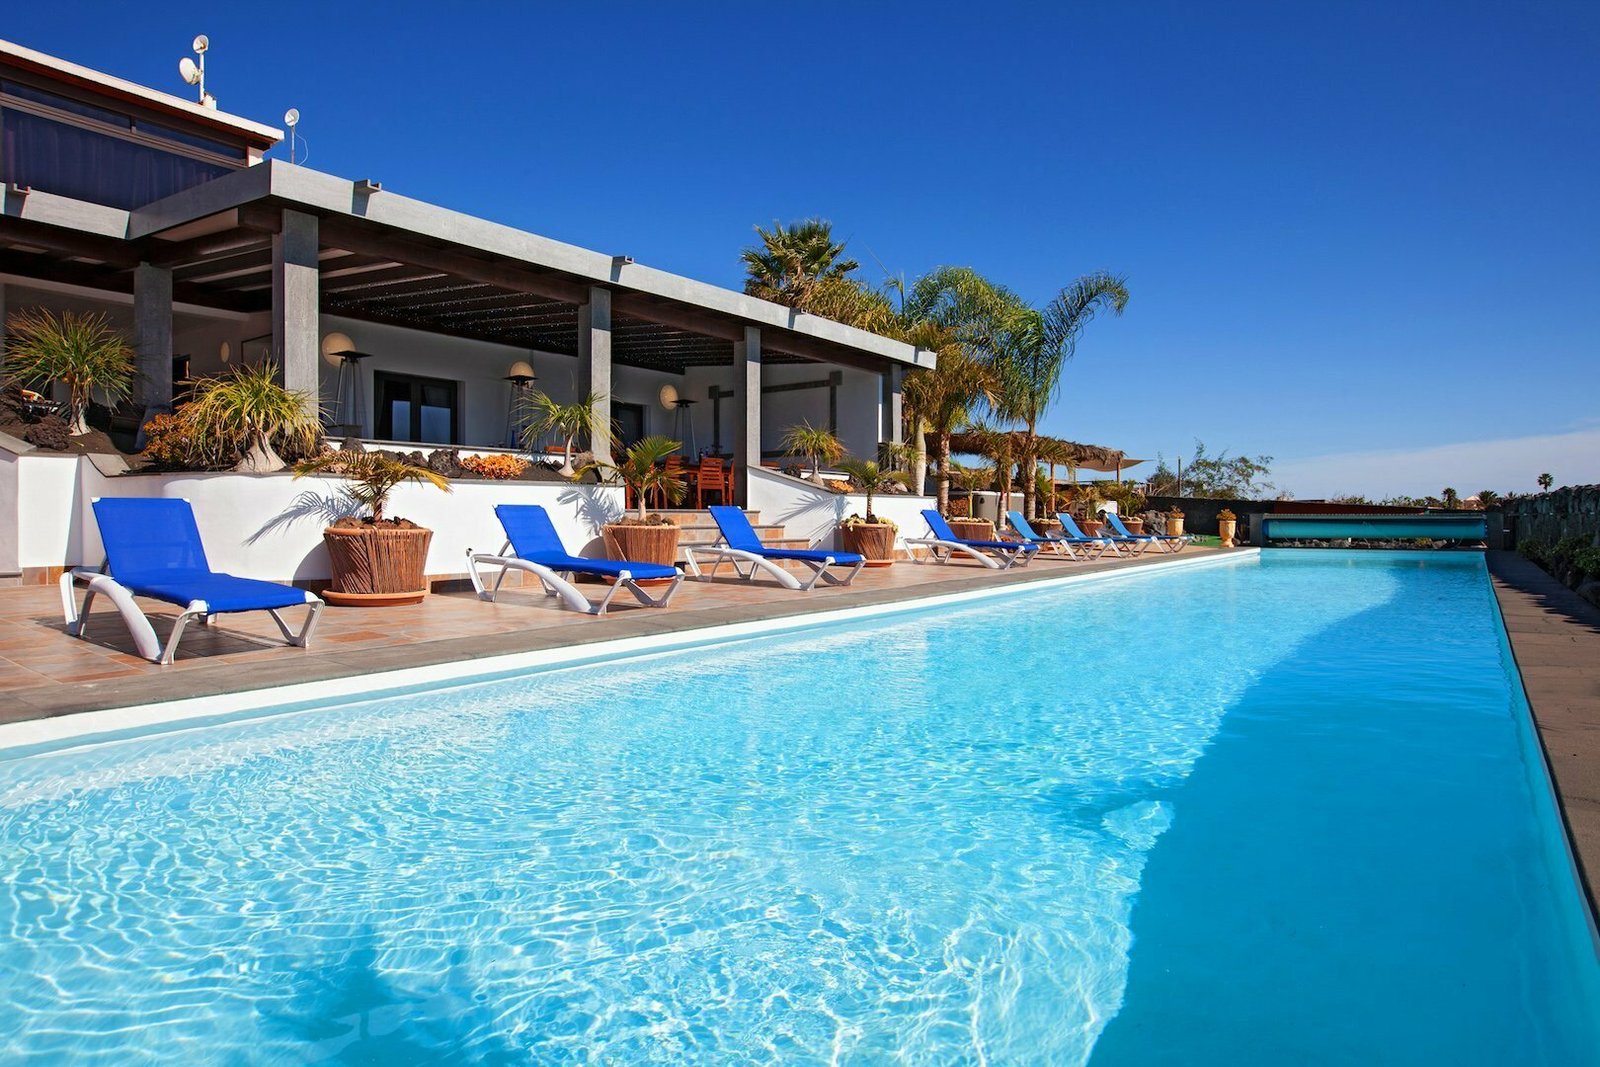 10 Bedroom Villas For Rental In Lanzarote